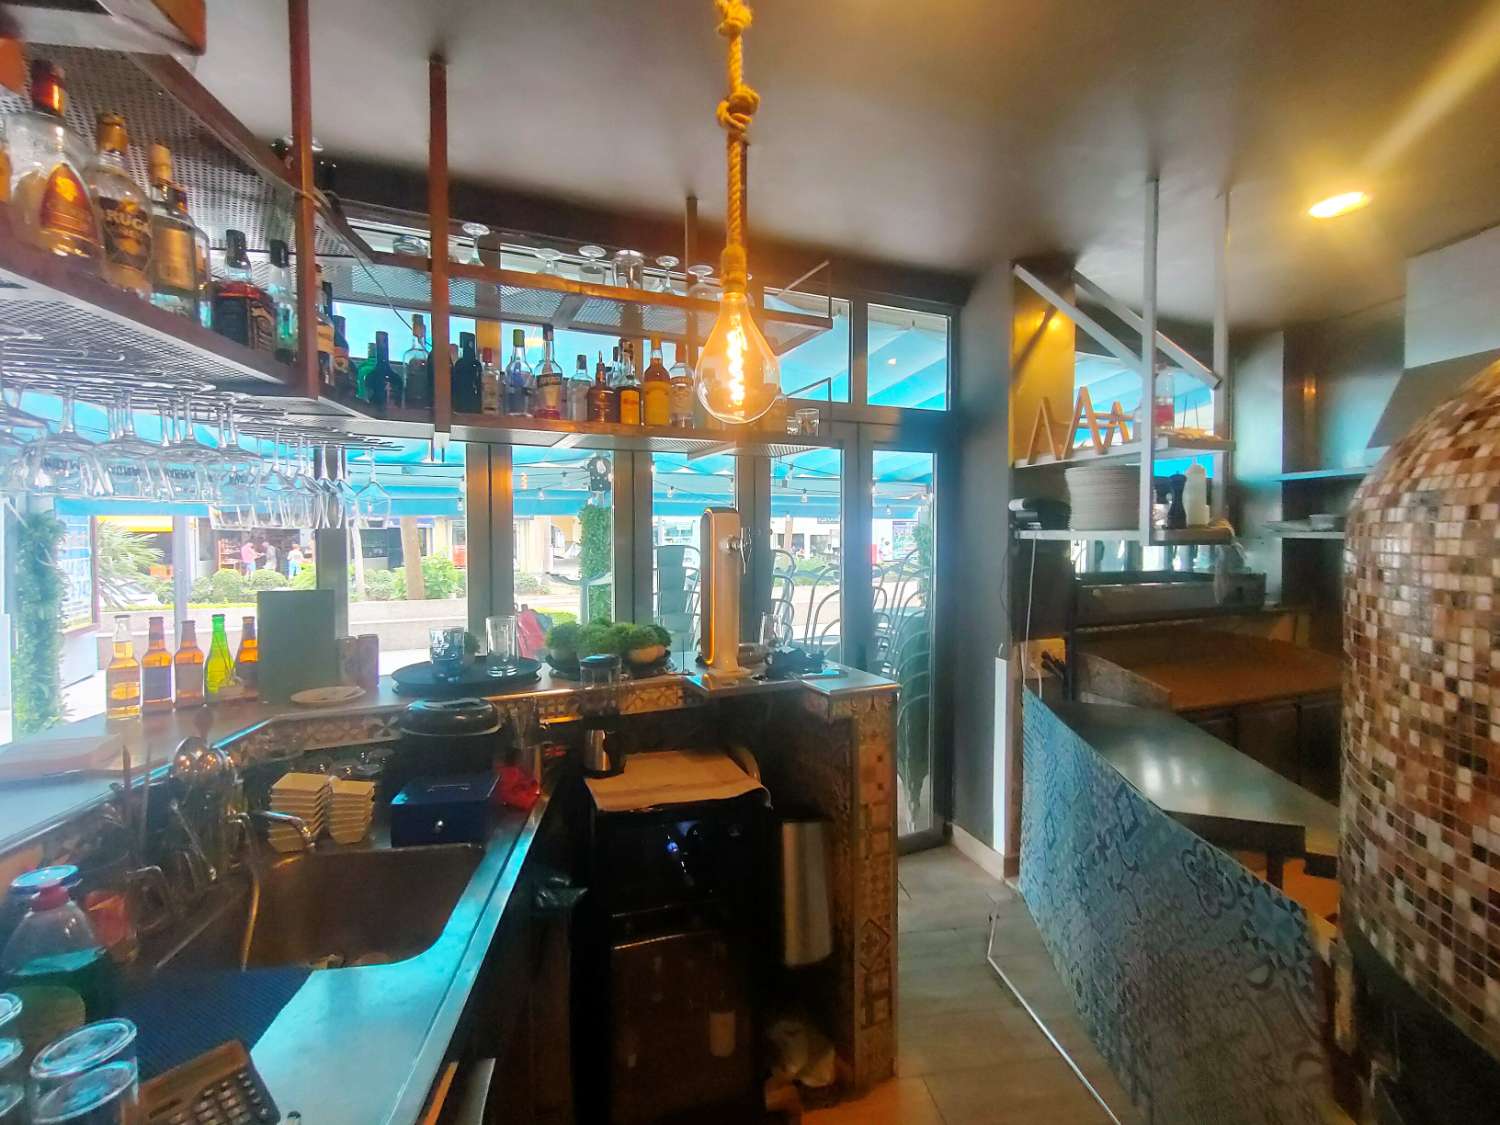 Pizzeria Cafeteria Benalmadena Costa del Solissa - Main Avenuella